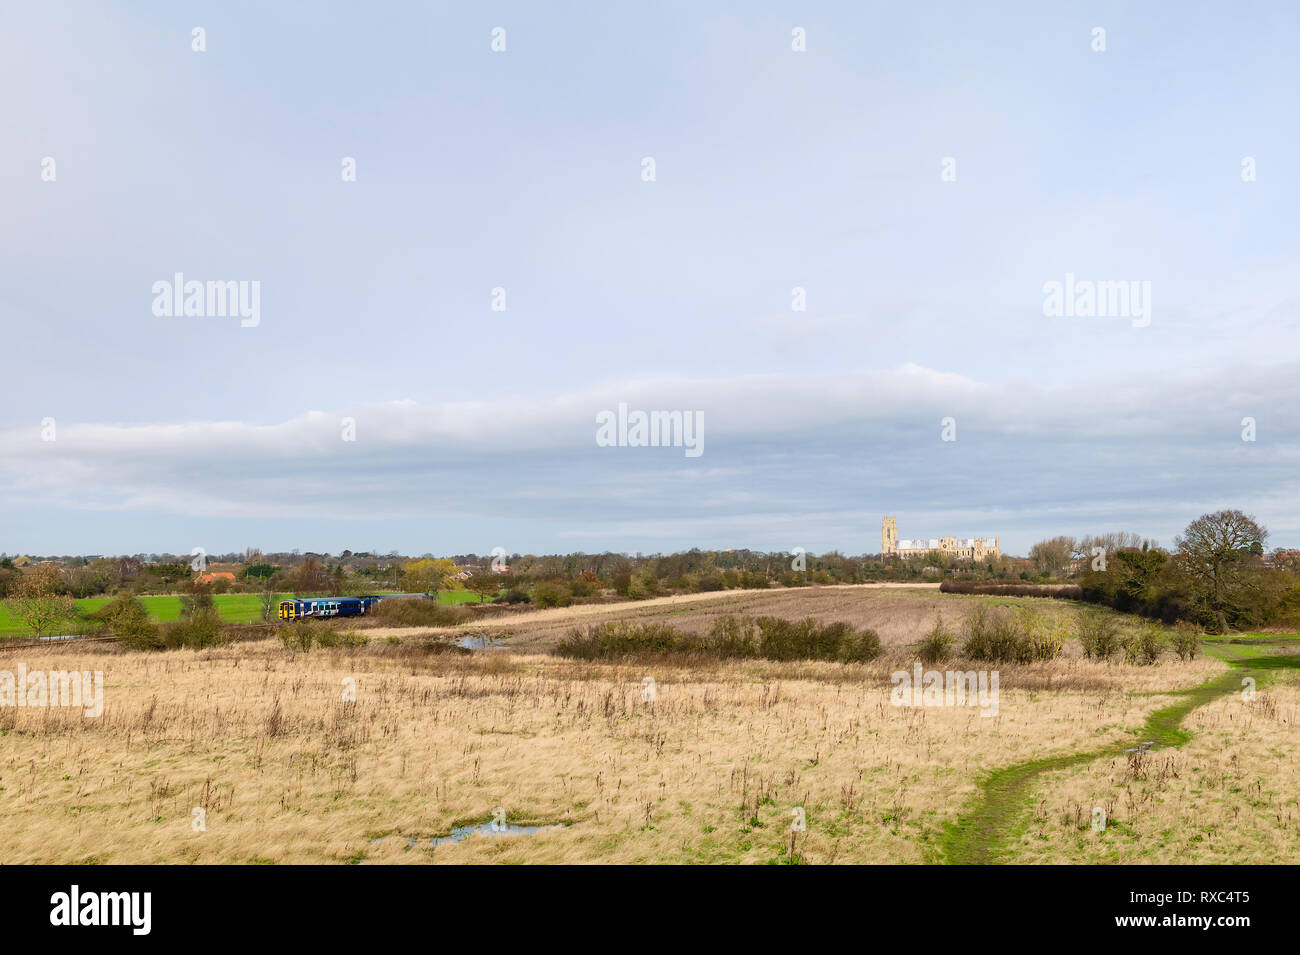 Il paesaggio agricolo e di un parco con alberi secolari e antiche minster sull'orizzonte e il convoglio ferroviario in primavera a Beverley, Yorkshire. Foto Stock